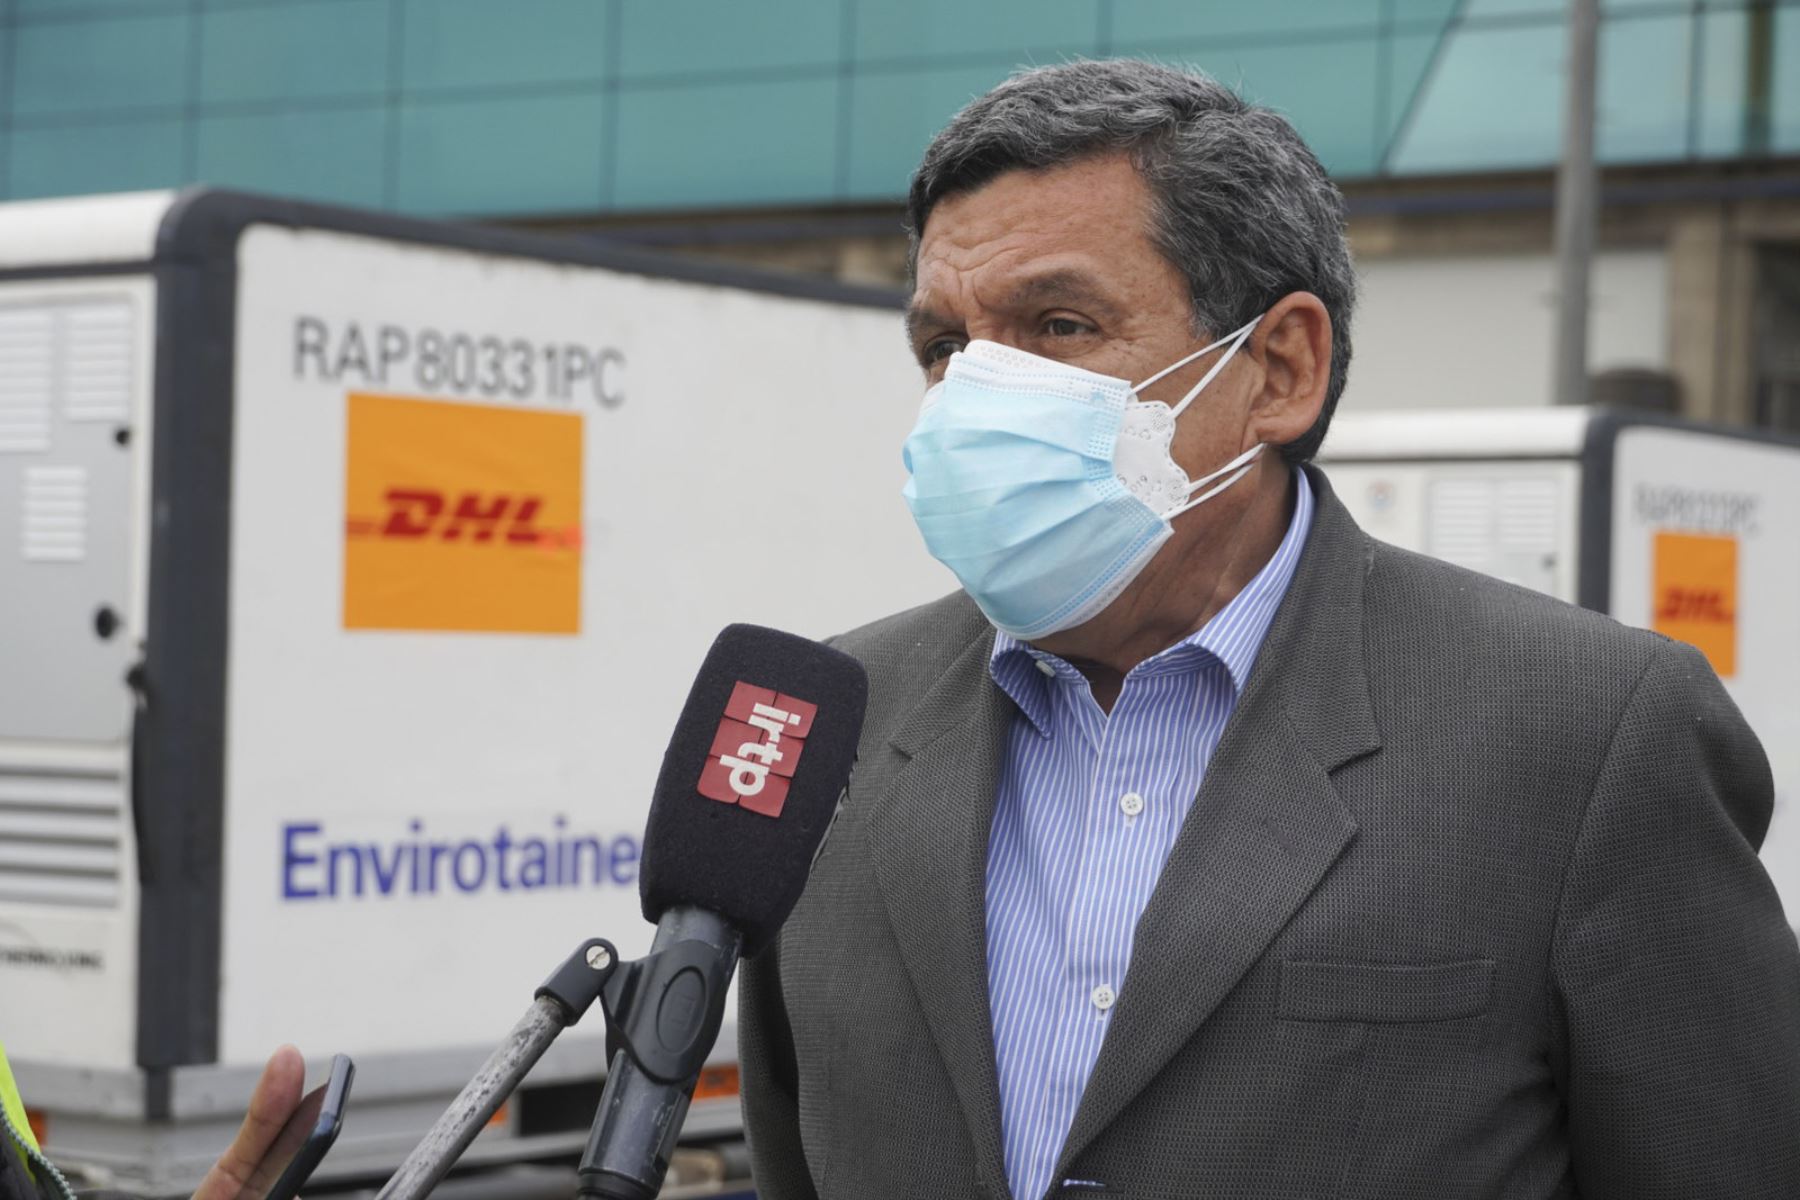 El ministro de Salud, Hernando Cevallos, supervisó esta tarde el arribo de lote de 1 908 100 dosis de la vacuna Sinopharm contra la covid-19, en el aeropuerto internacional Jorge Chávez del Callao. Foto: ANDINA/Minsa